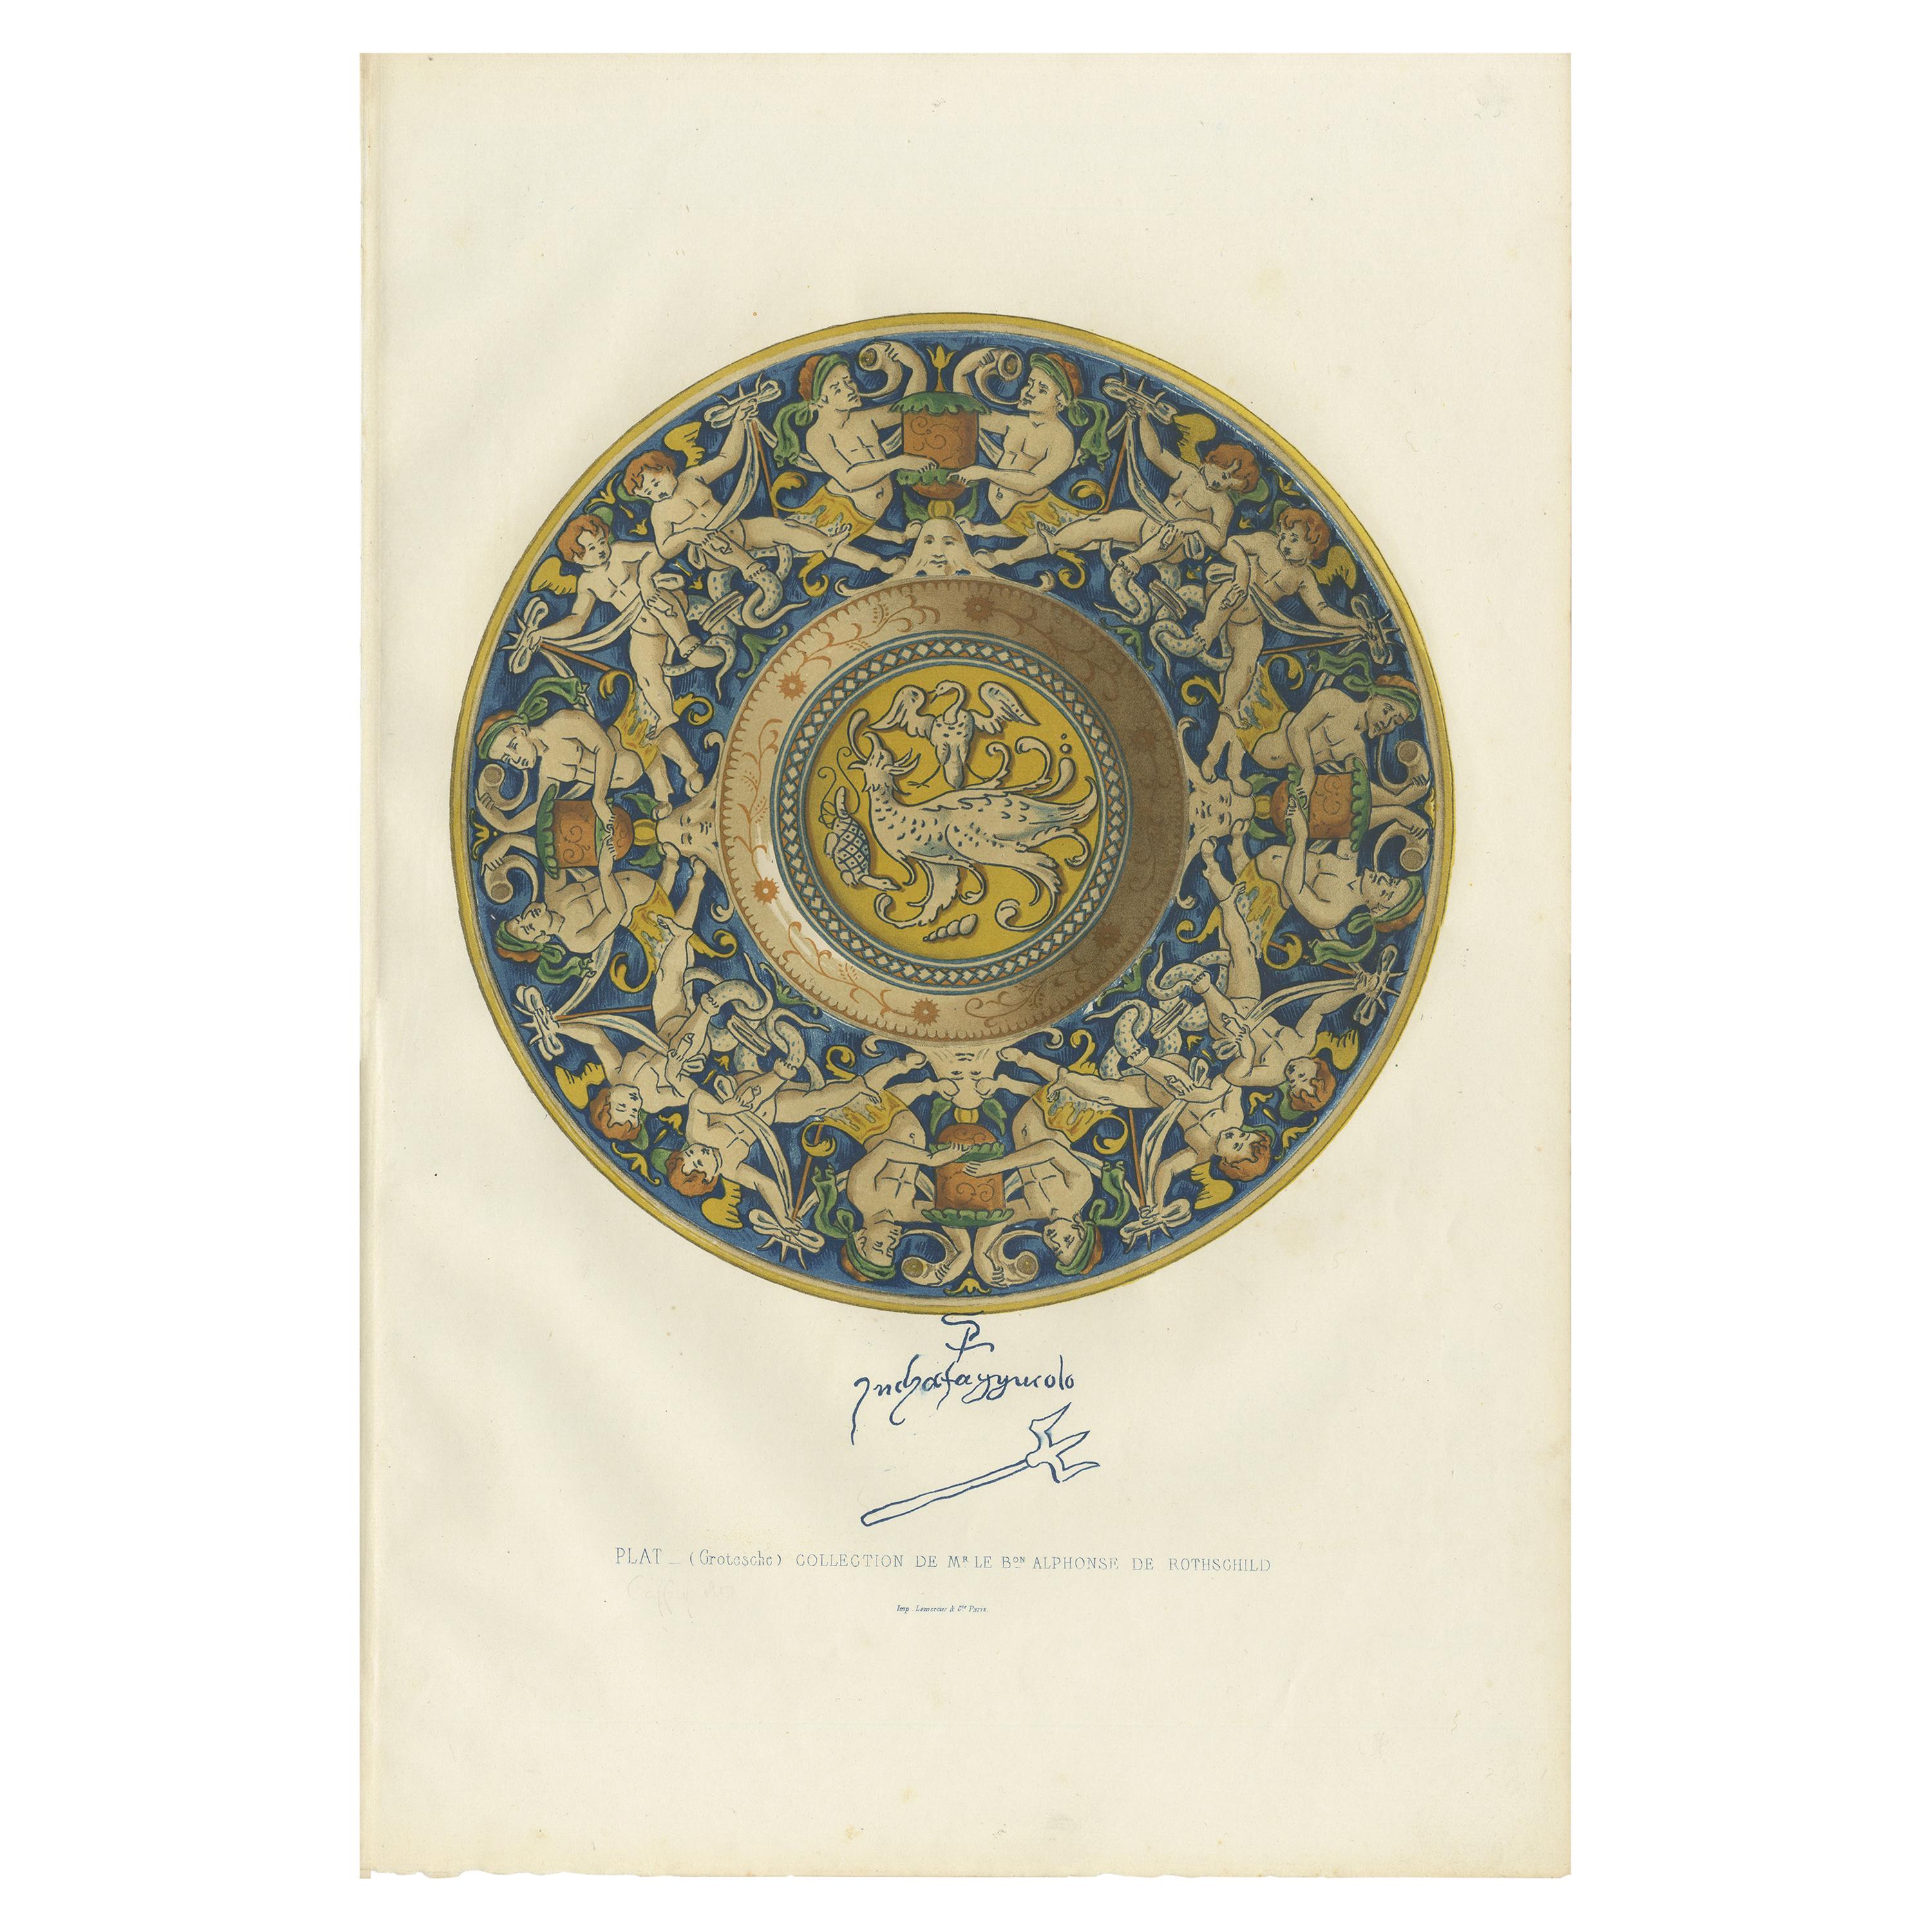 Antique Print of a Plate of Mr. le Bon Alphonse de Rothschild by Delange '1869' For Sale